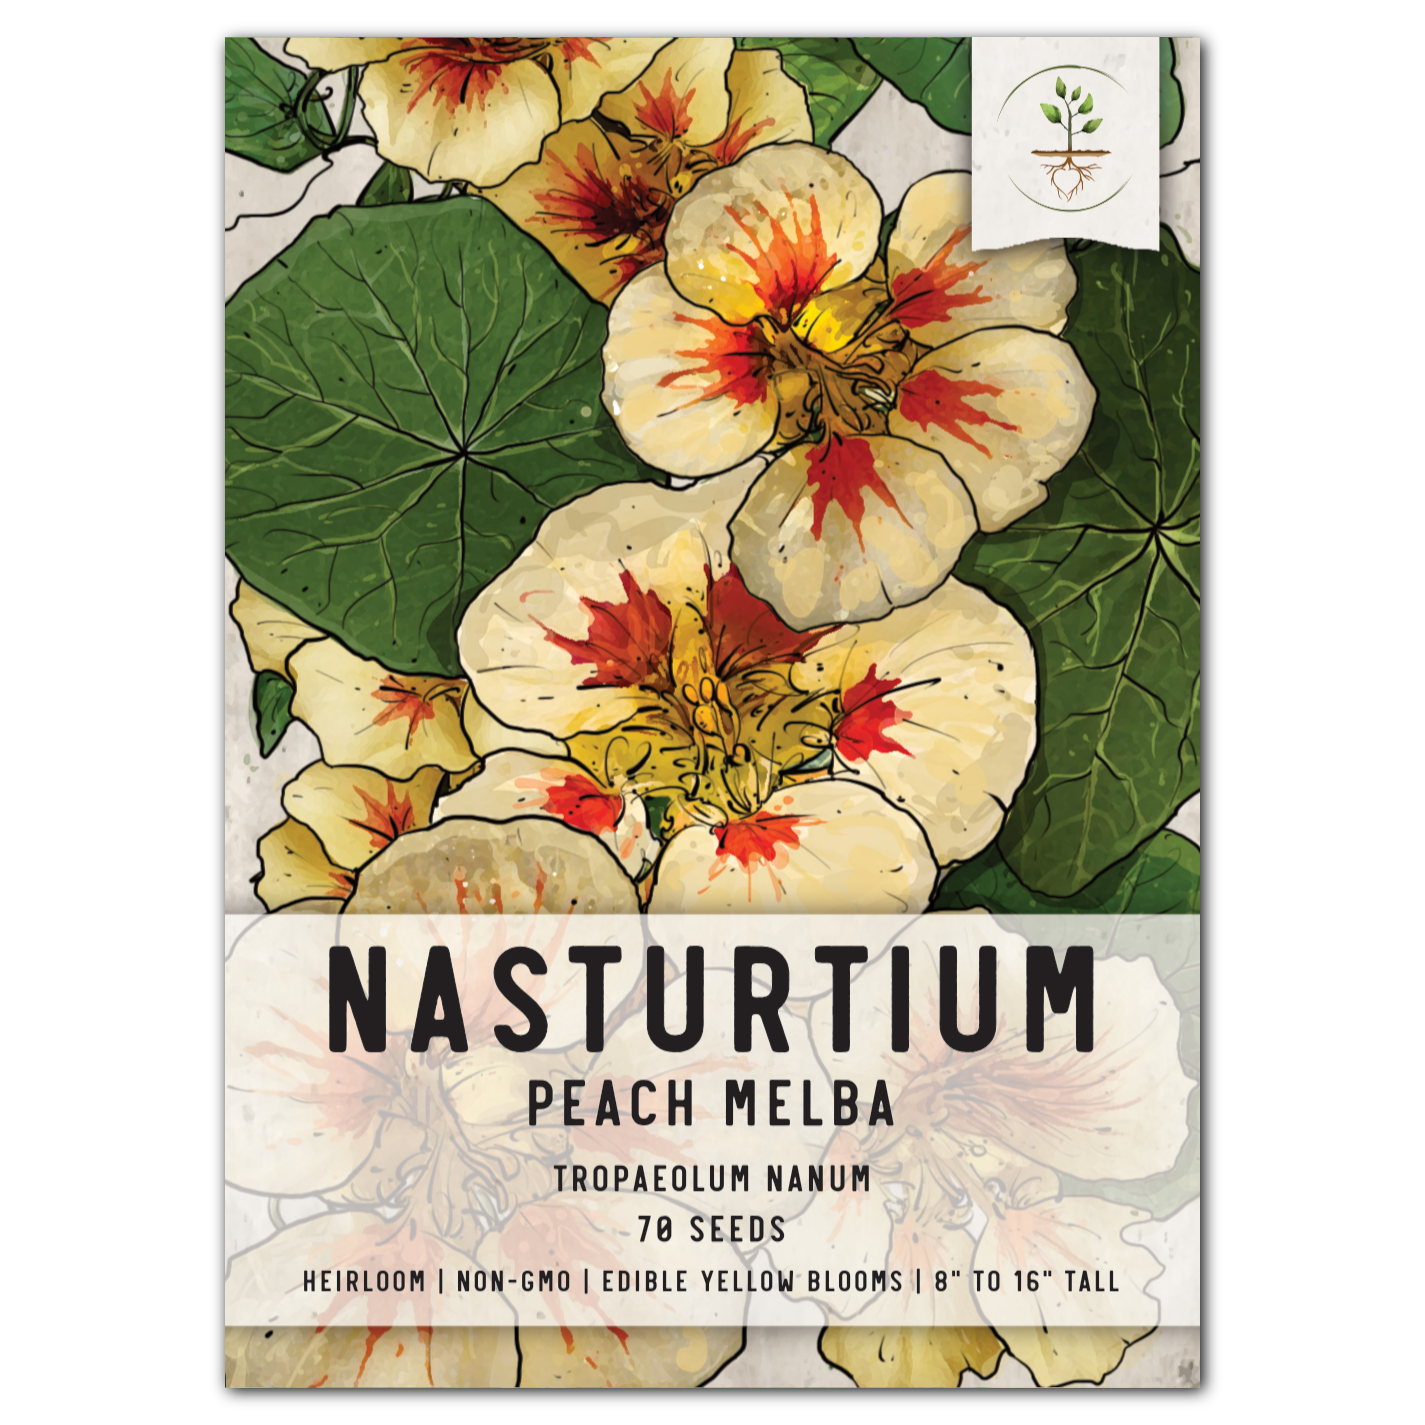 peach melba nasturtium seeds for planting